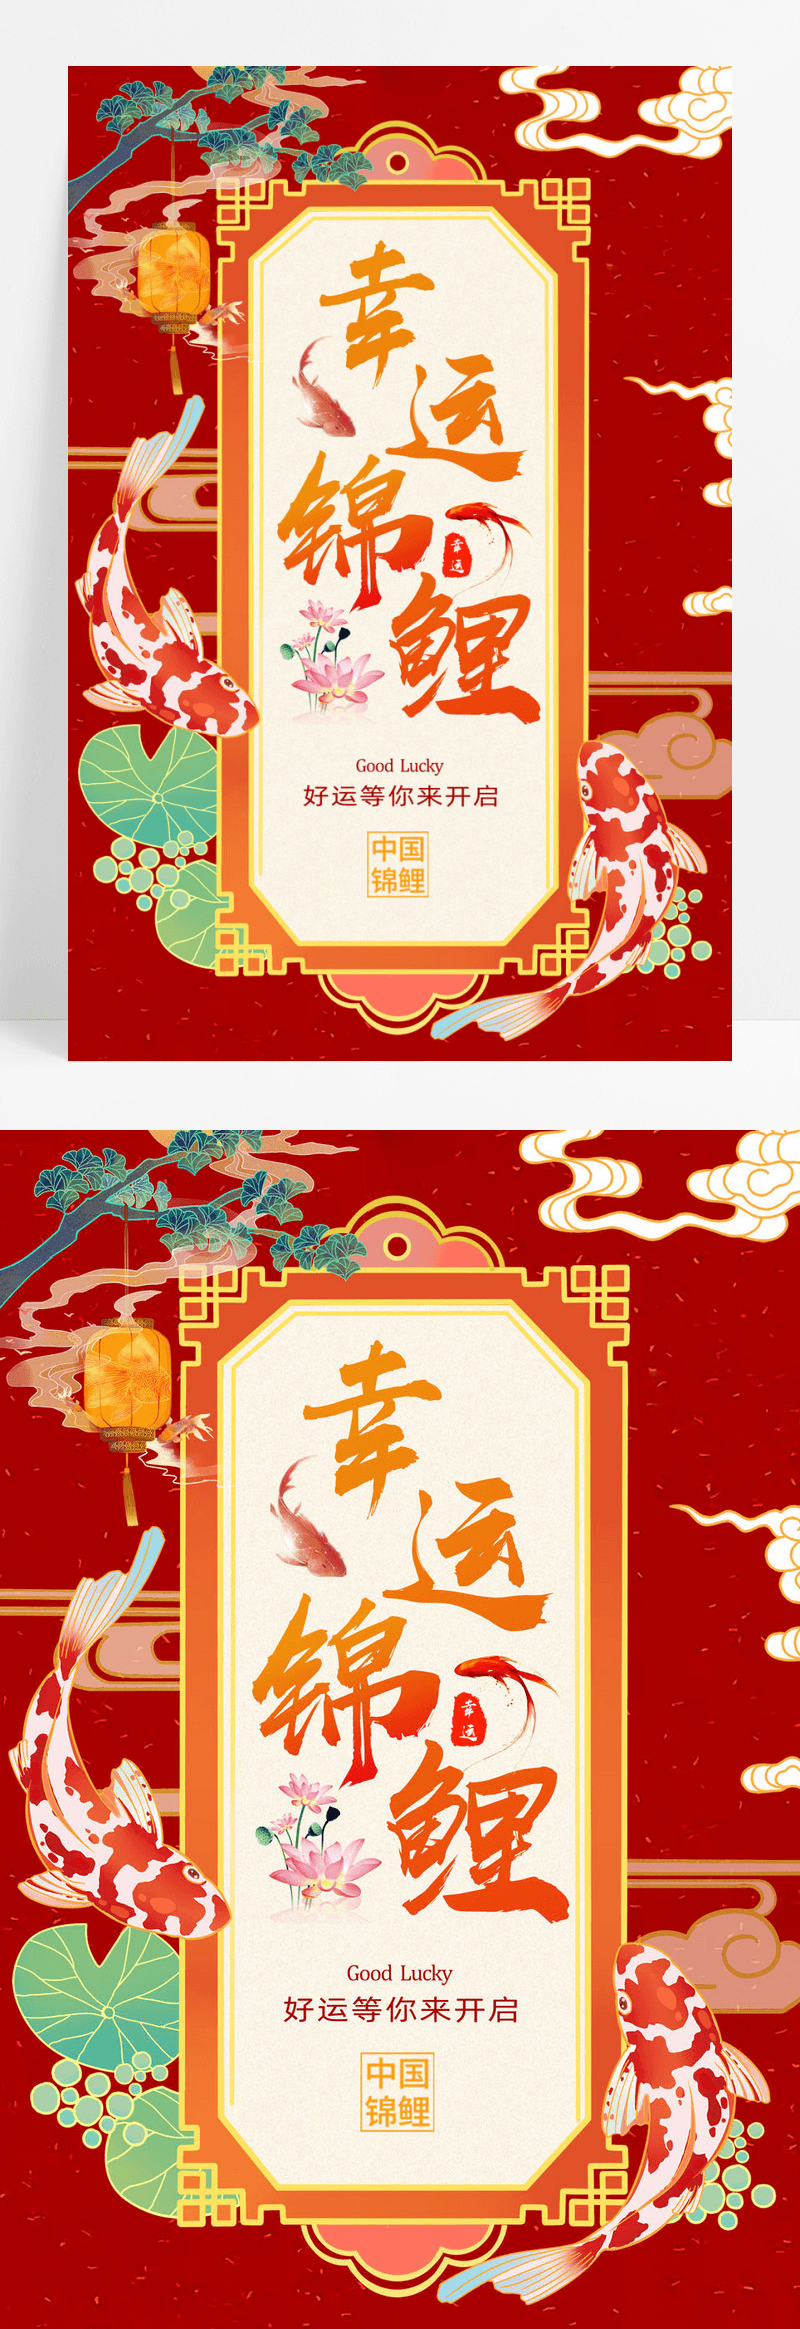 简约大气中国风锦鲤活动创意海报设计